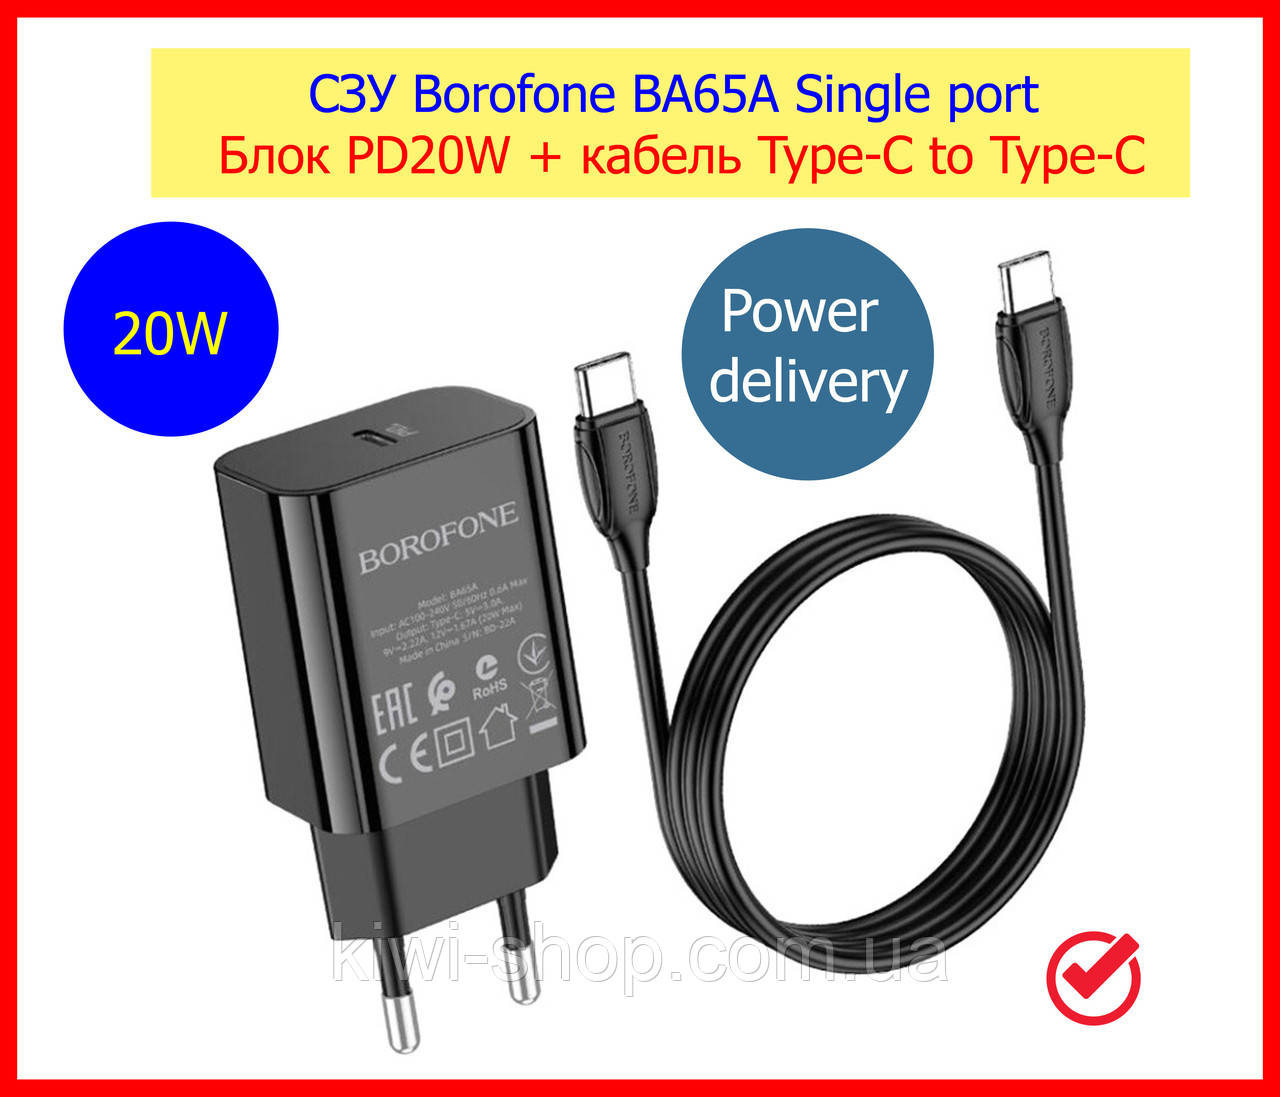 Швидке заряджання для Samsung USB-C PD 20 W BOROFONE BA65A чорний, заряджання (блок PD20W + кабель Type-C to Type-C)